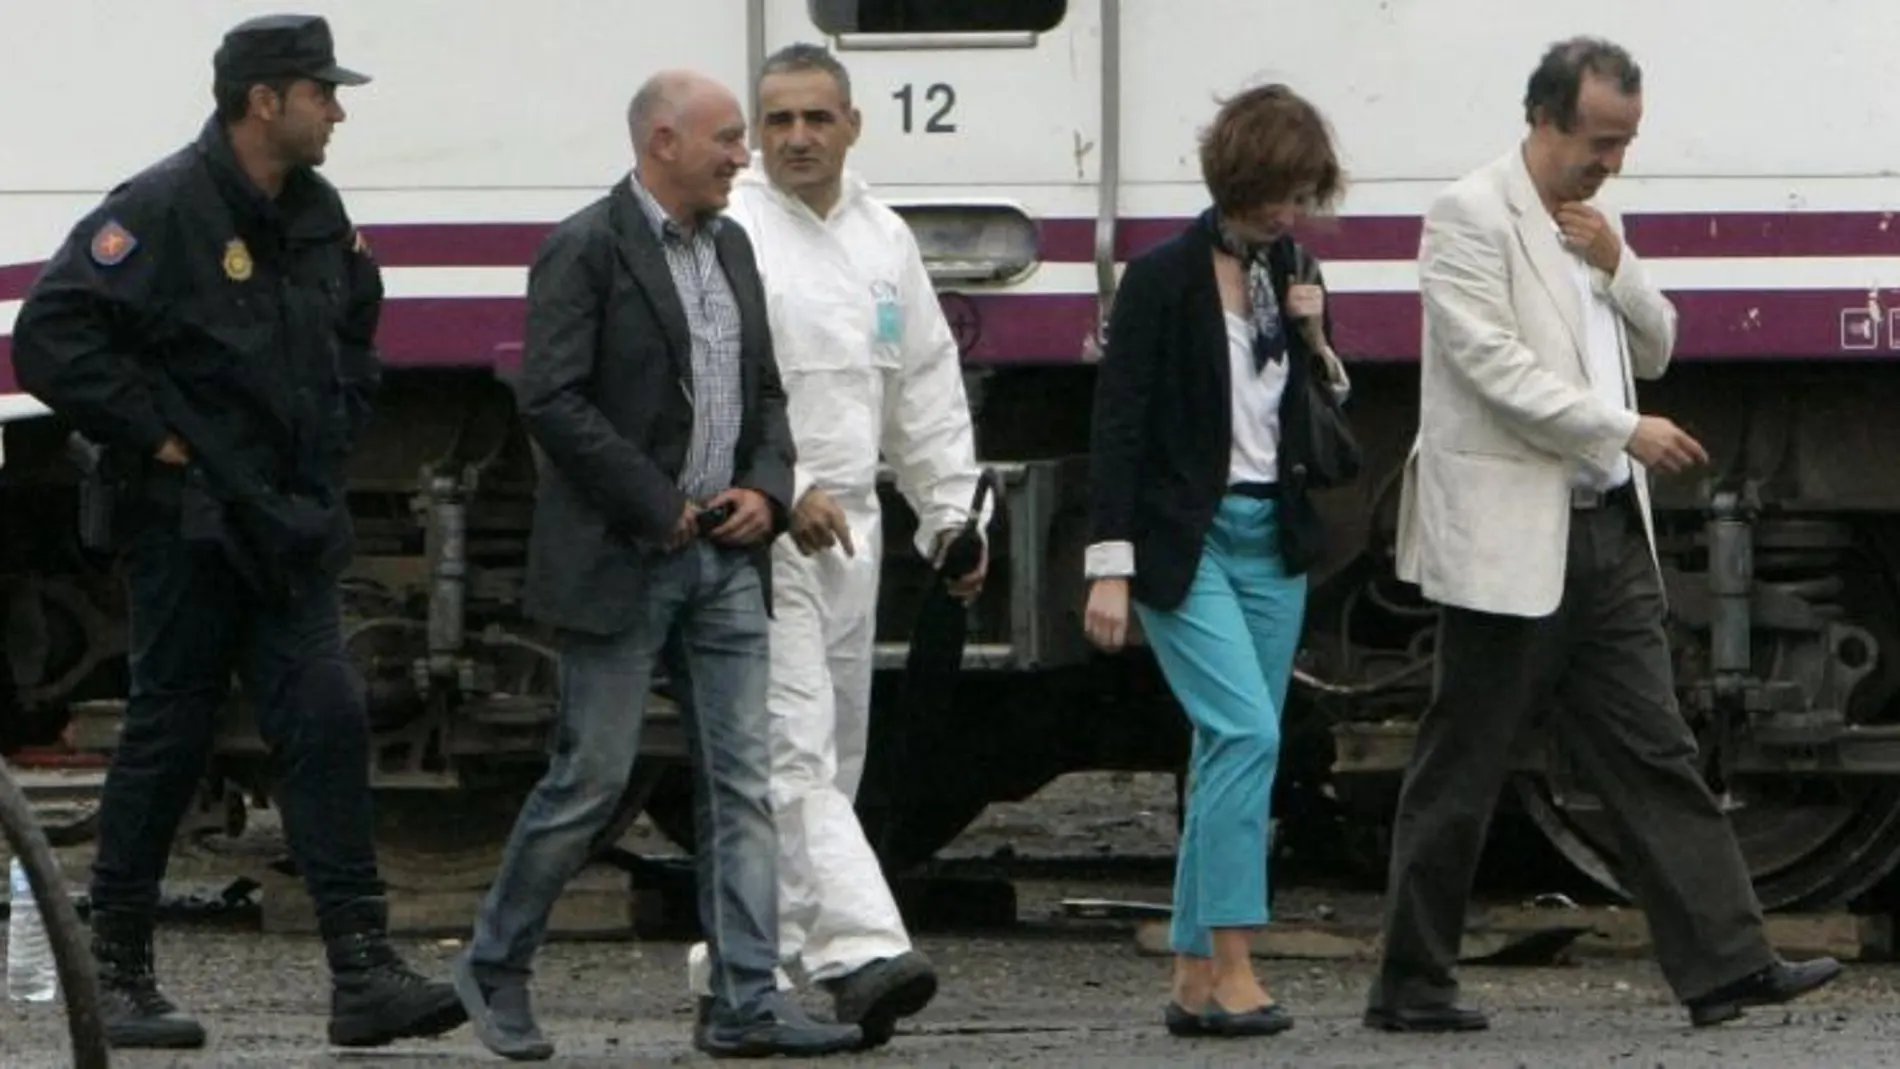 El juez encargado de investigar el accidente del Alvia, Luis Aláez (2i), acompañado por otros miembros del juzgado, durante su visita al lugar donde se custodia e investiga los vagones y máquinas del tren accidentado.